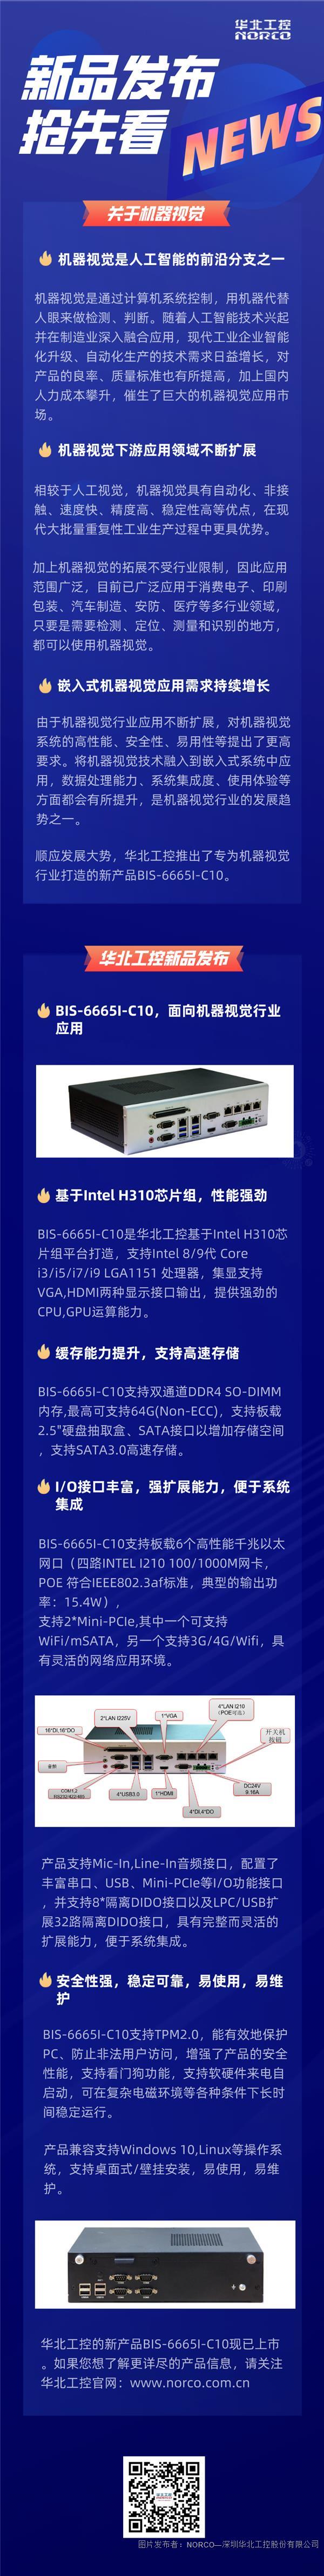 华北工控新产品BIS-6665I-C10发布 | 专为机器视觉行业打造